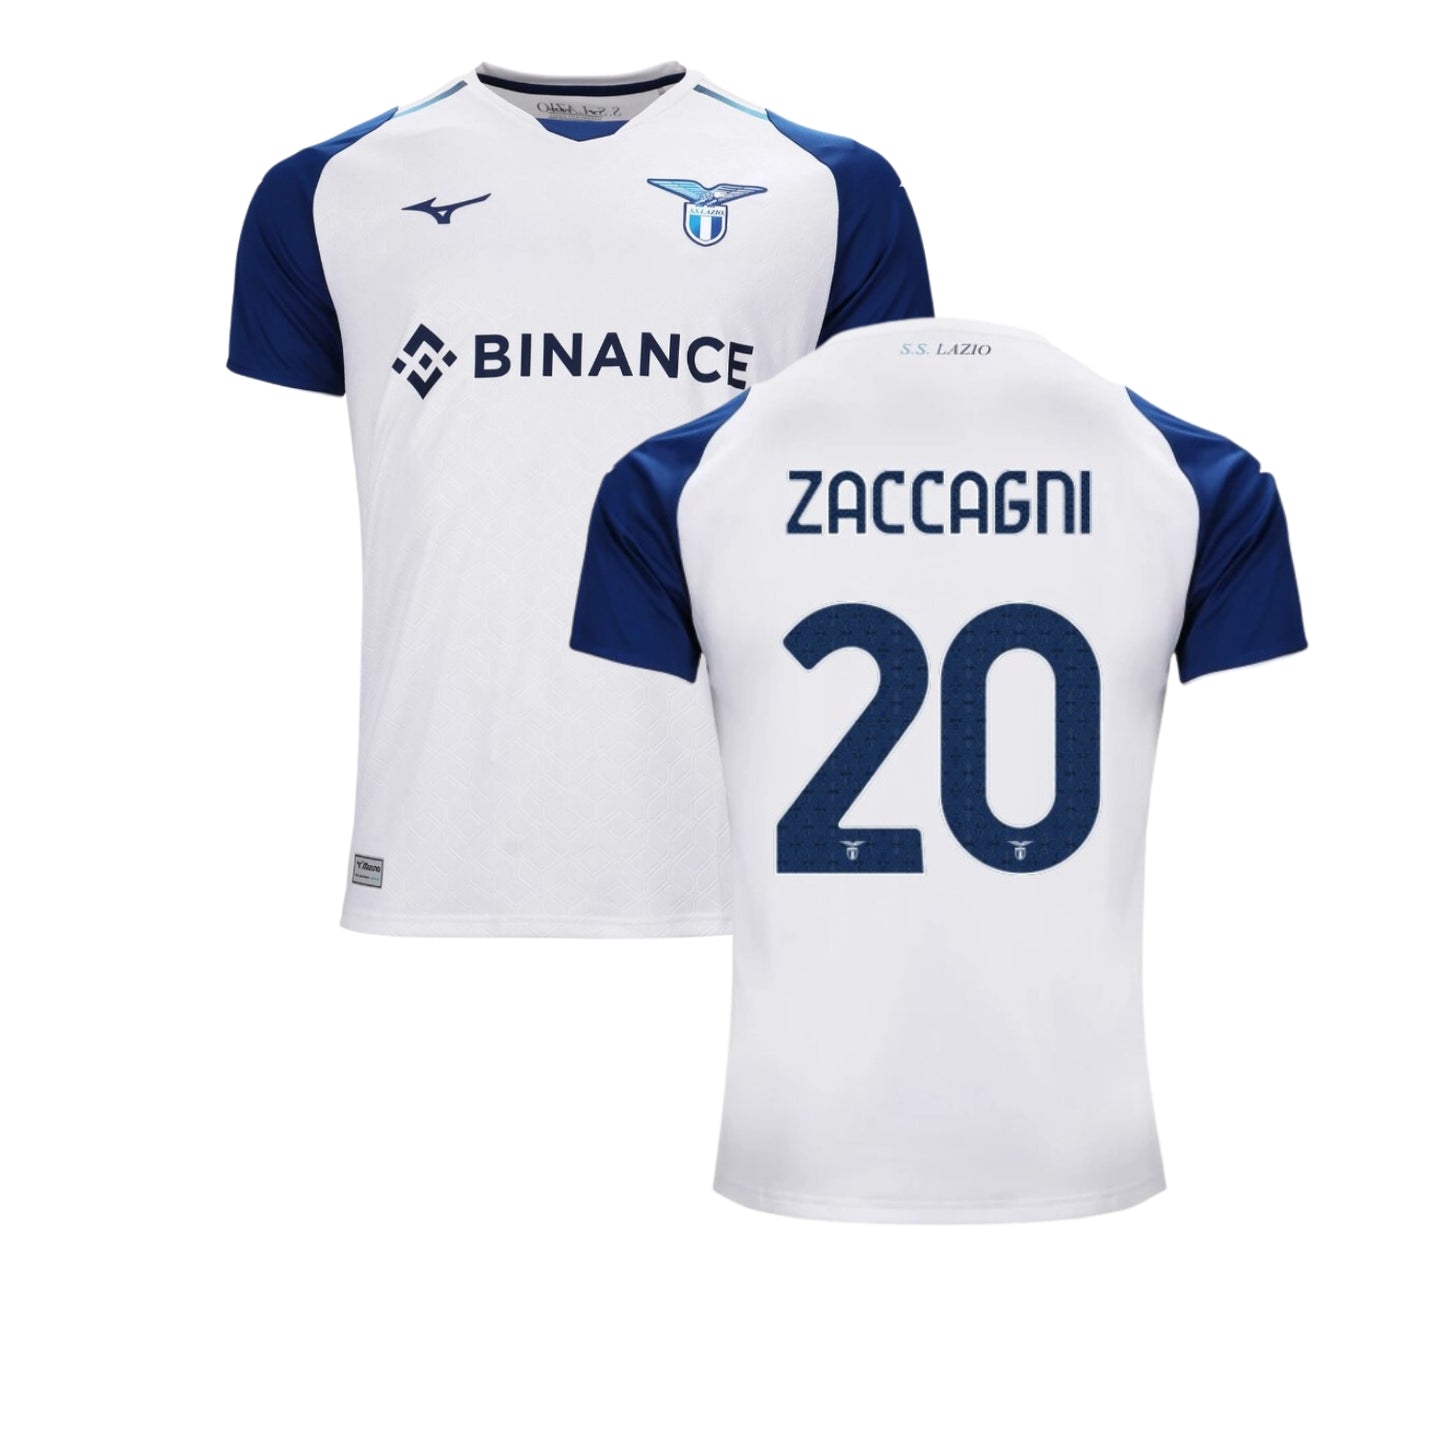 Mattia Zaccagni Napoli 20 Jersey